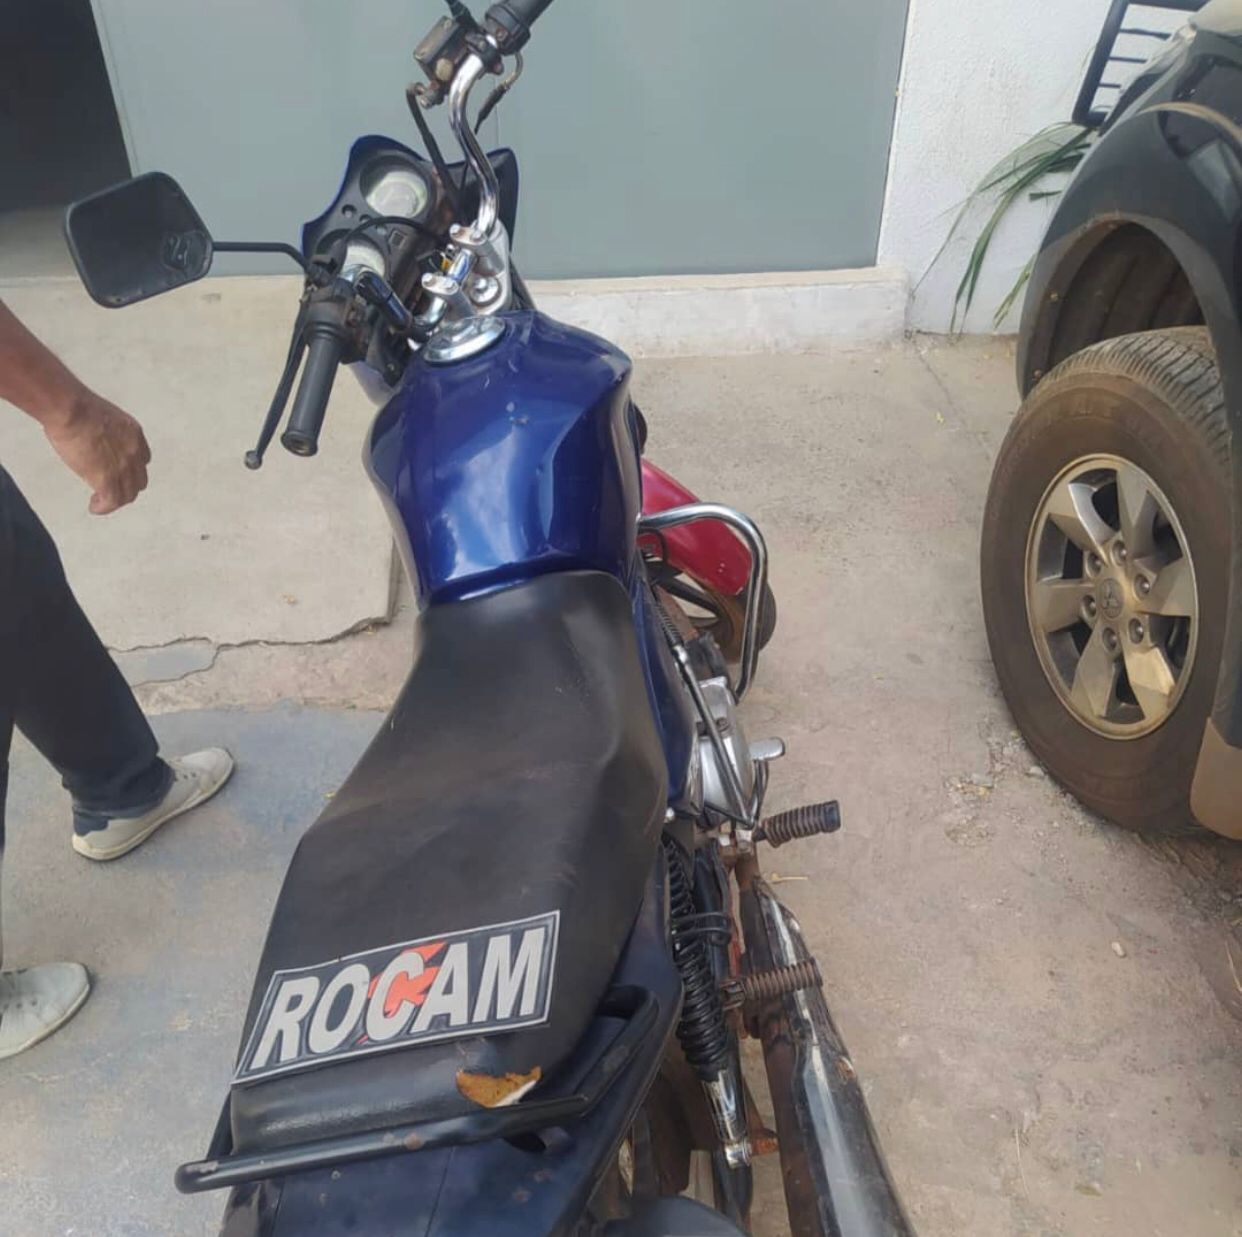 Em Picos, motocicleta com placa adulterada com fita adesiva é recuperada pela PM